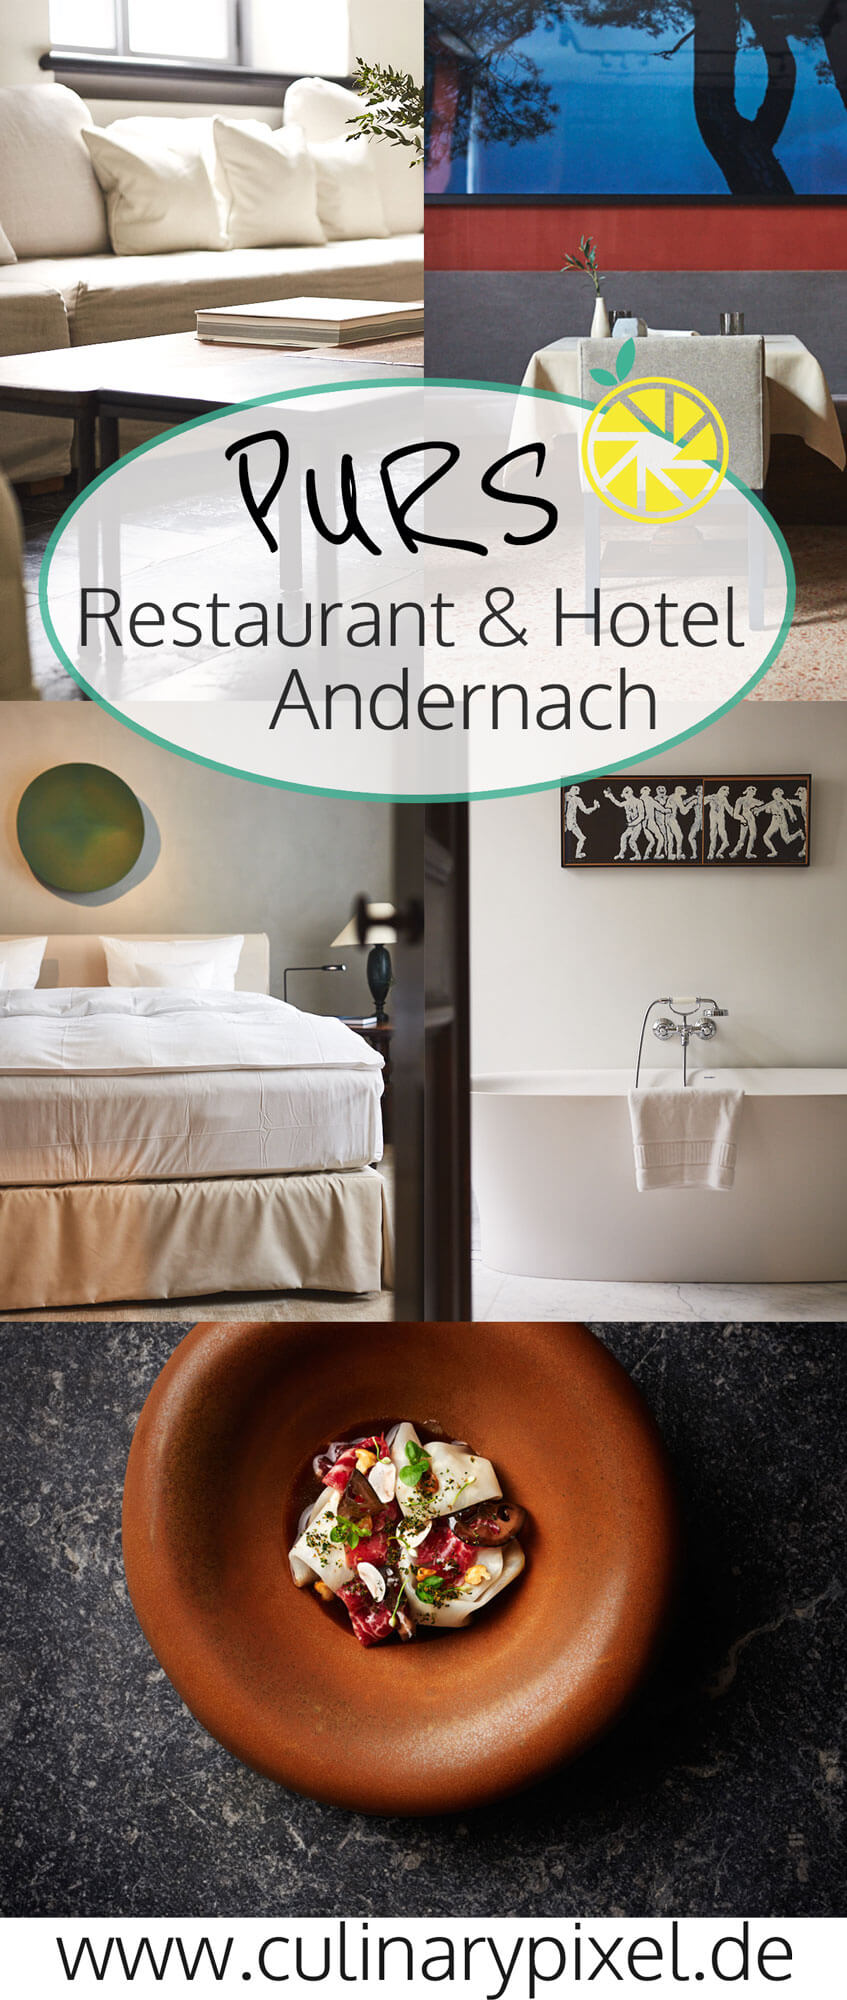 PURS Restaurant und Hotel Andernach, Küchenchef Christian Eckhardt, gestaltet von Axel Vervoordt